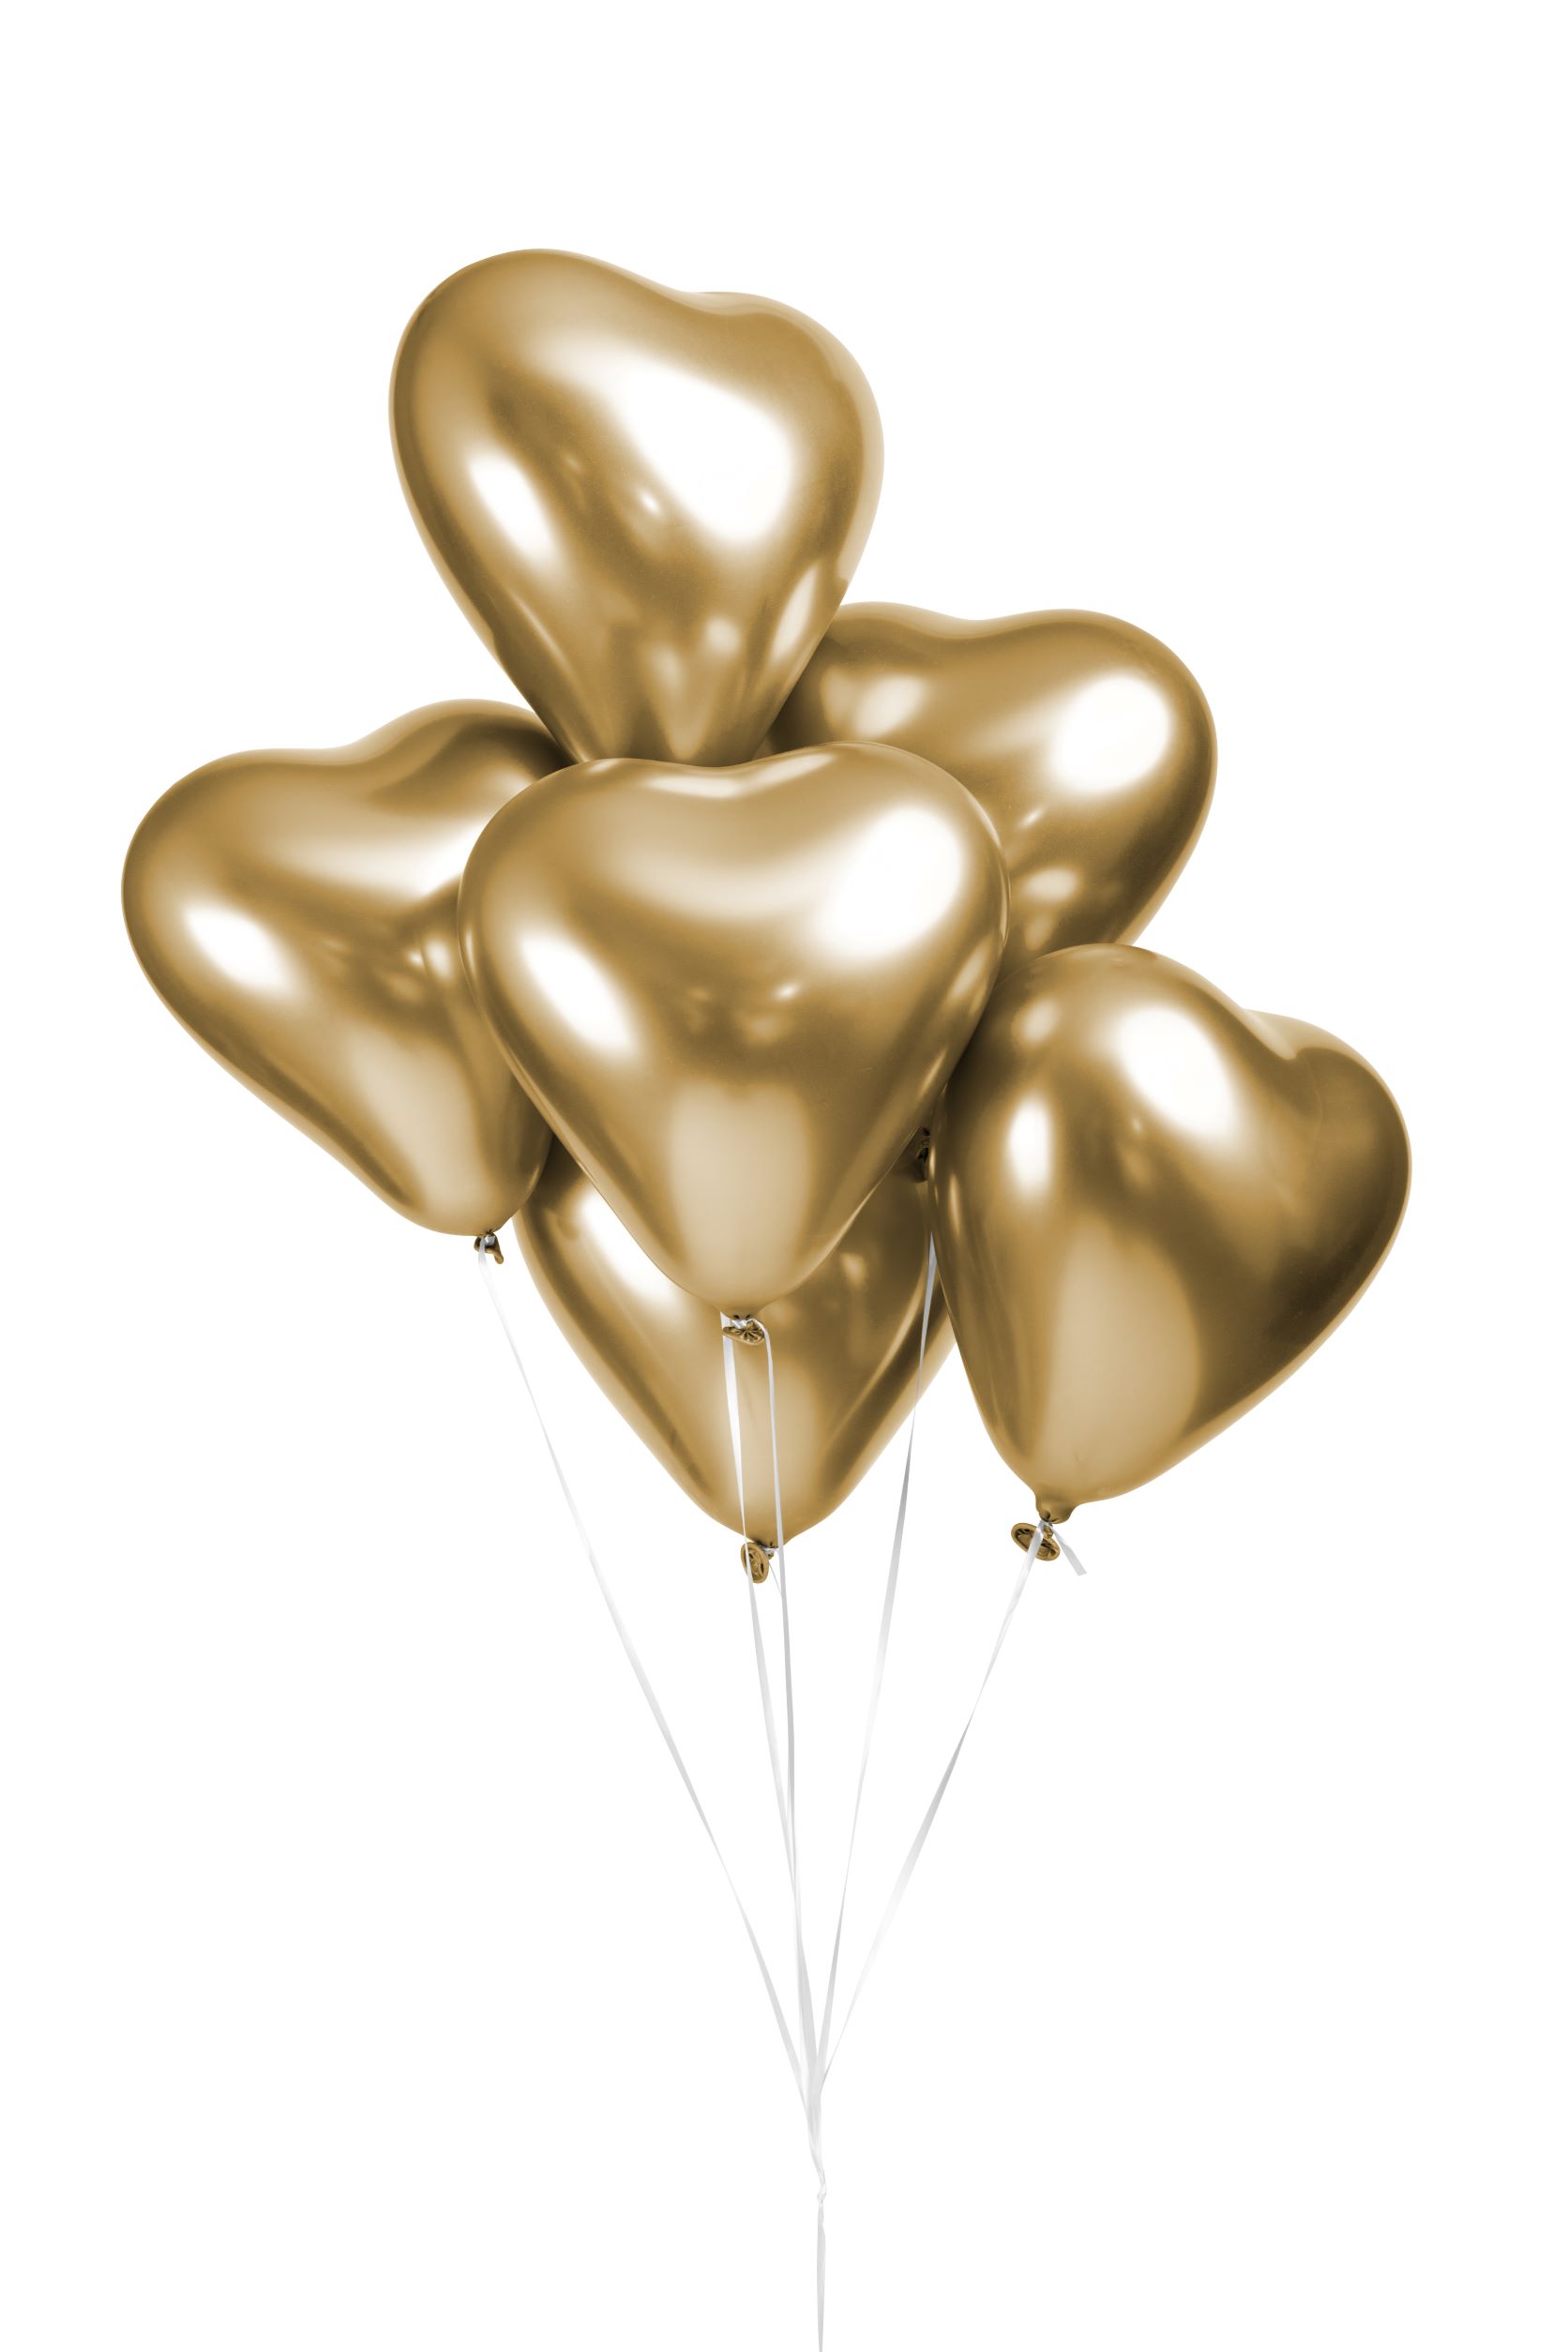 10st Chrome Hart Ballonnen Goud 12" (Middel)